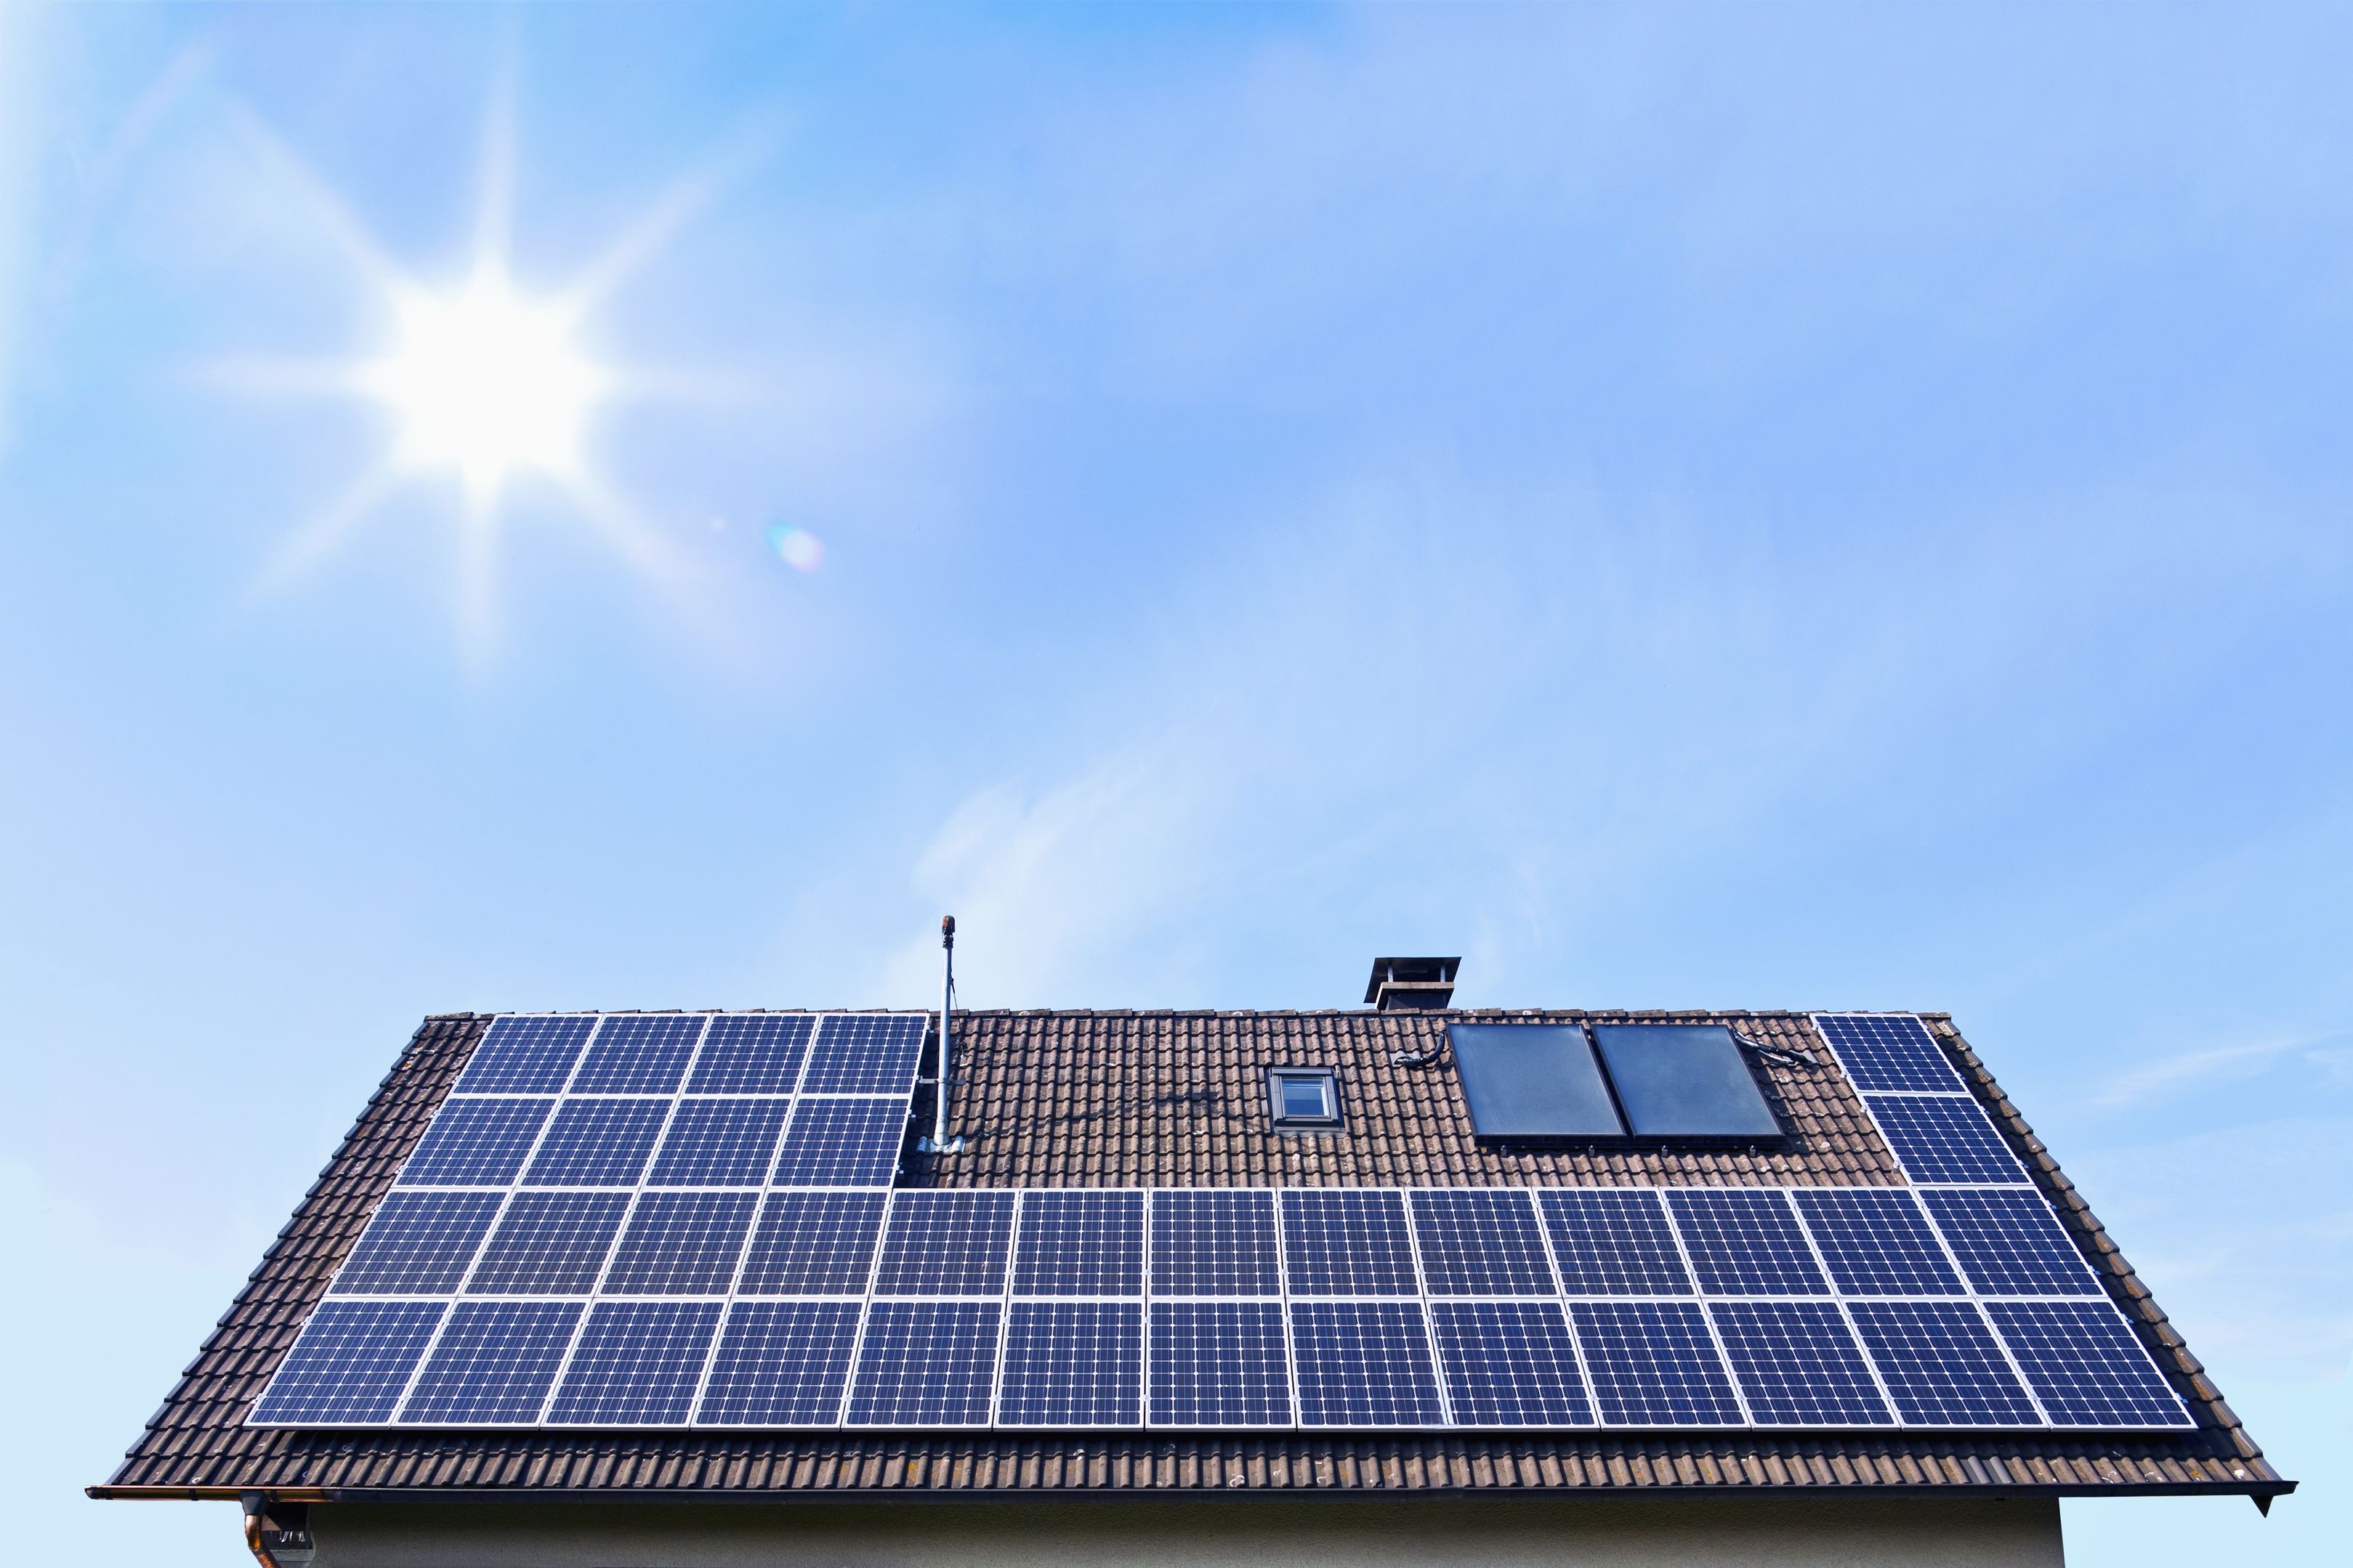 Les ménages peuvent désormais éliminer leurs factures d’électricité en seulement six ans grâce à l’énergie solaire